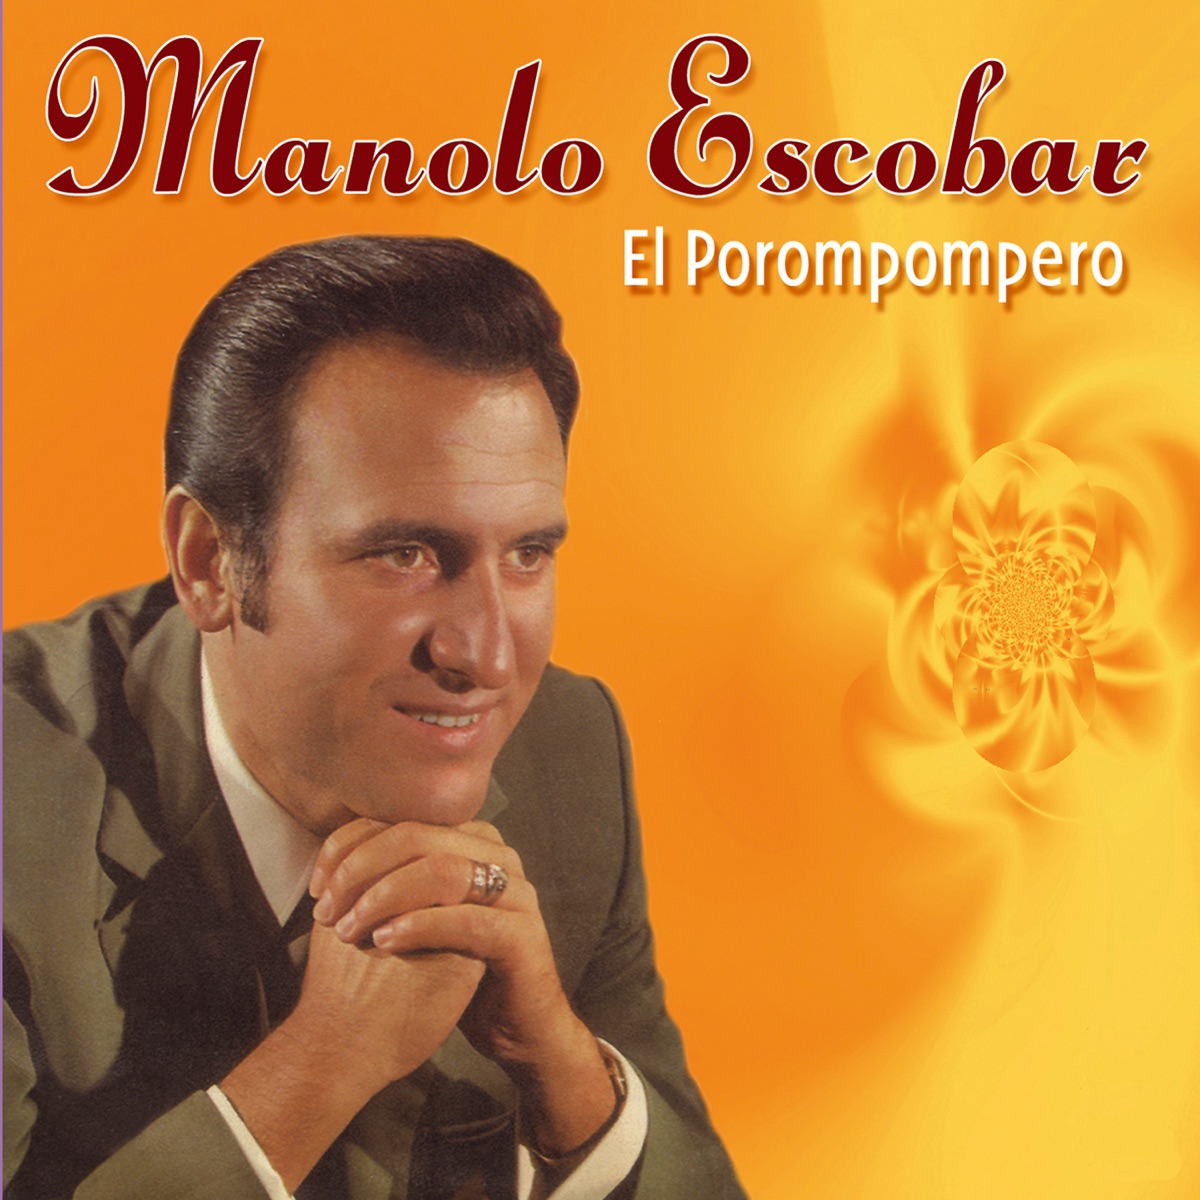 El Porompompero by Manolo Escobar on Apple Music